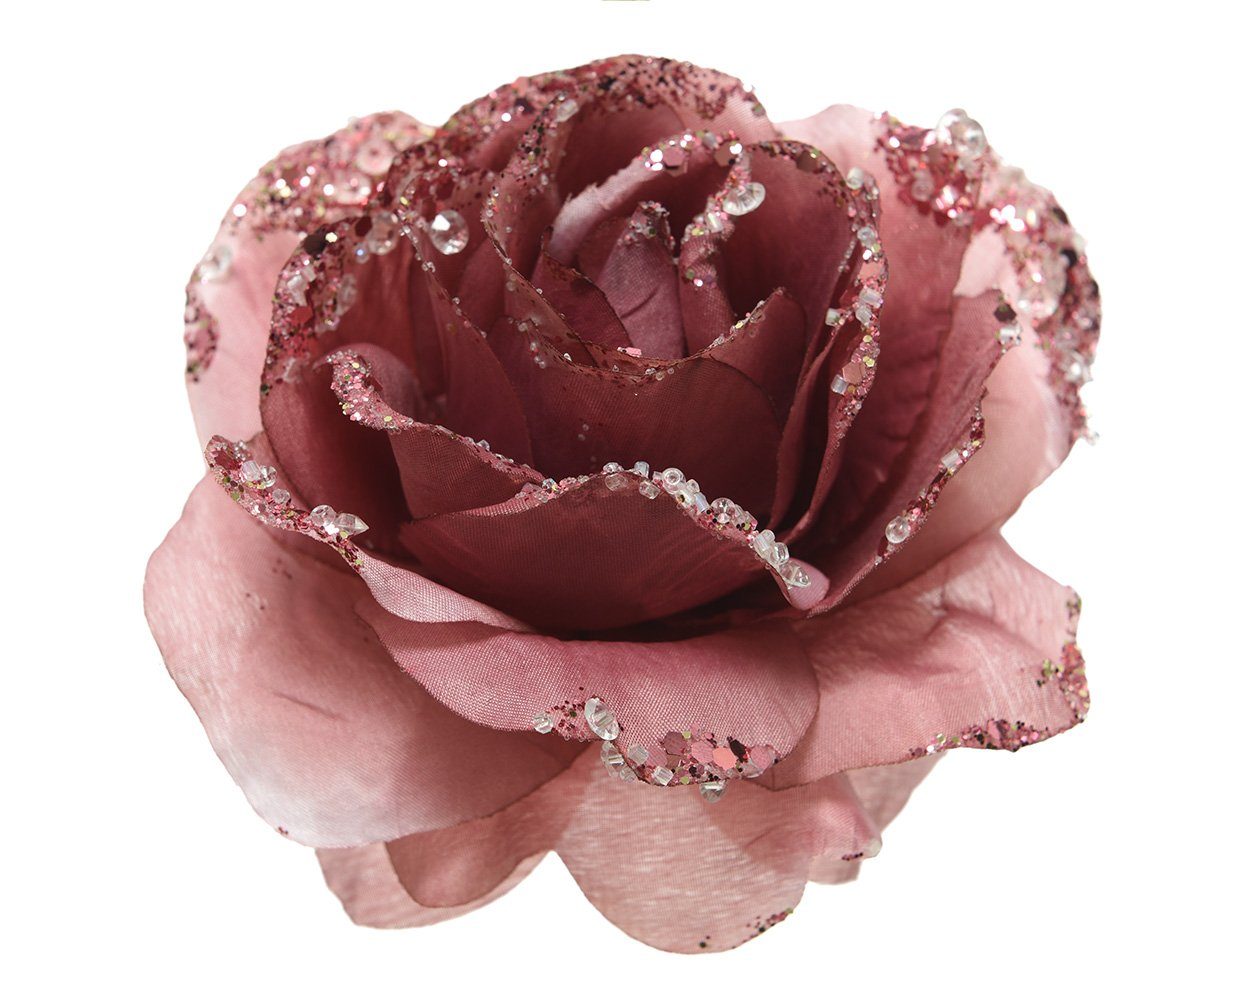 Clip Rose Kunstblumen Weihnachtsbaumklammer, auf season samtpink 14cm Decoris decorations